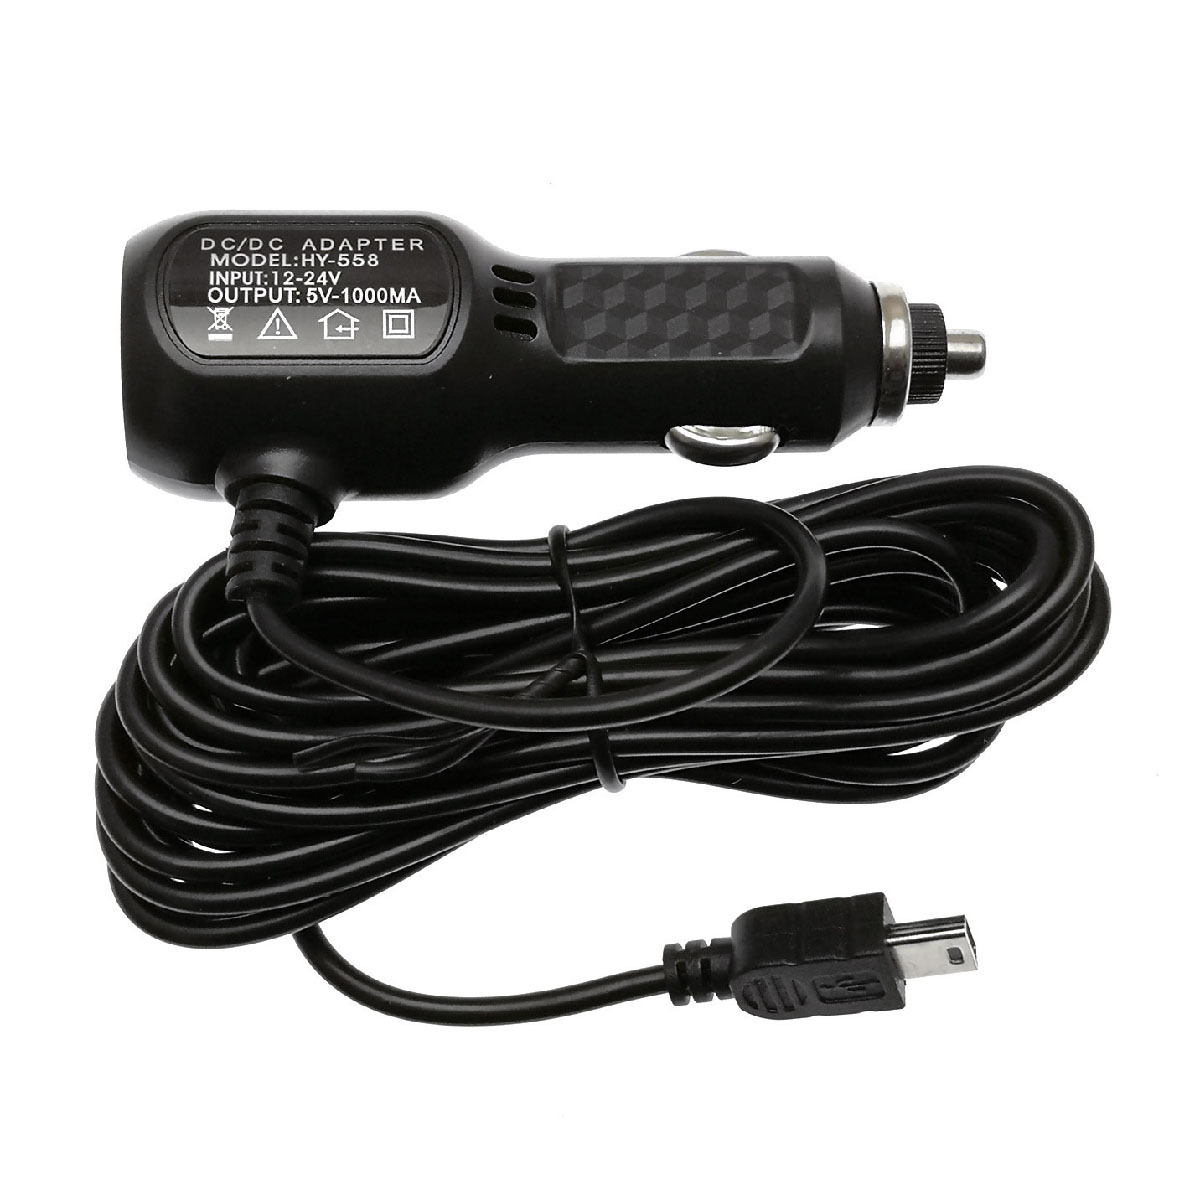 Автомобильный видеорегистратор Dash Cam M009 3в1 GPS трекер, WIFI, магнитный кронштейн.